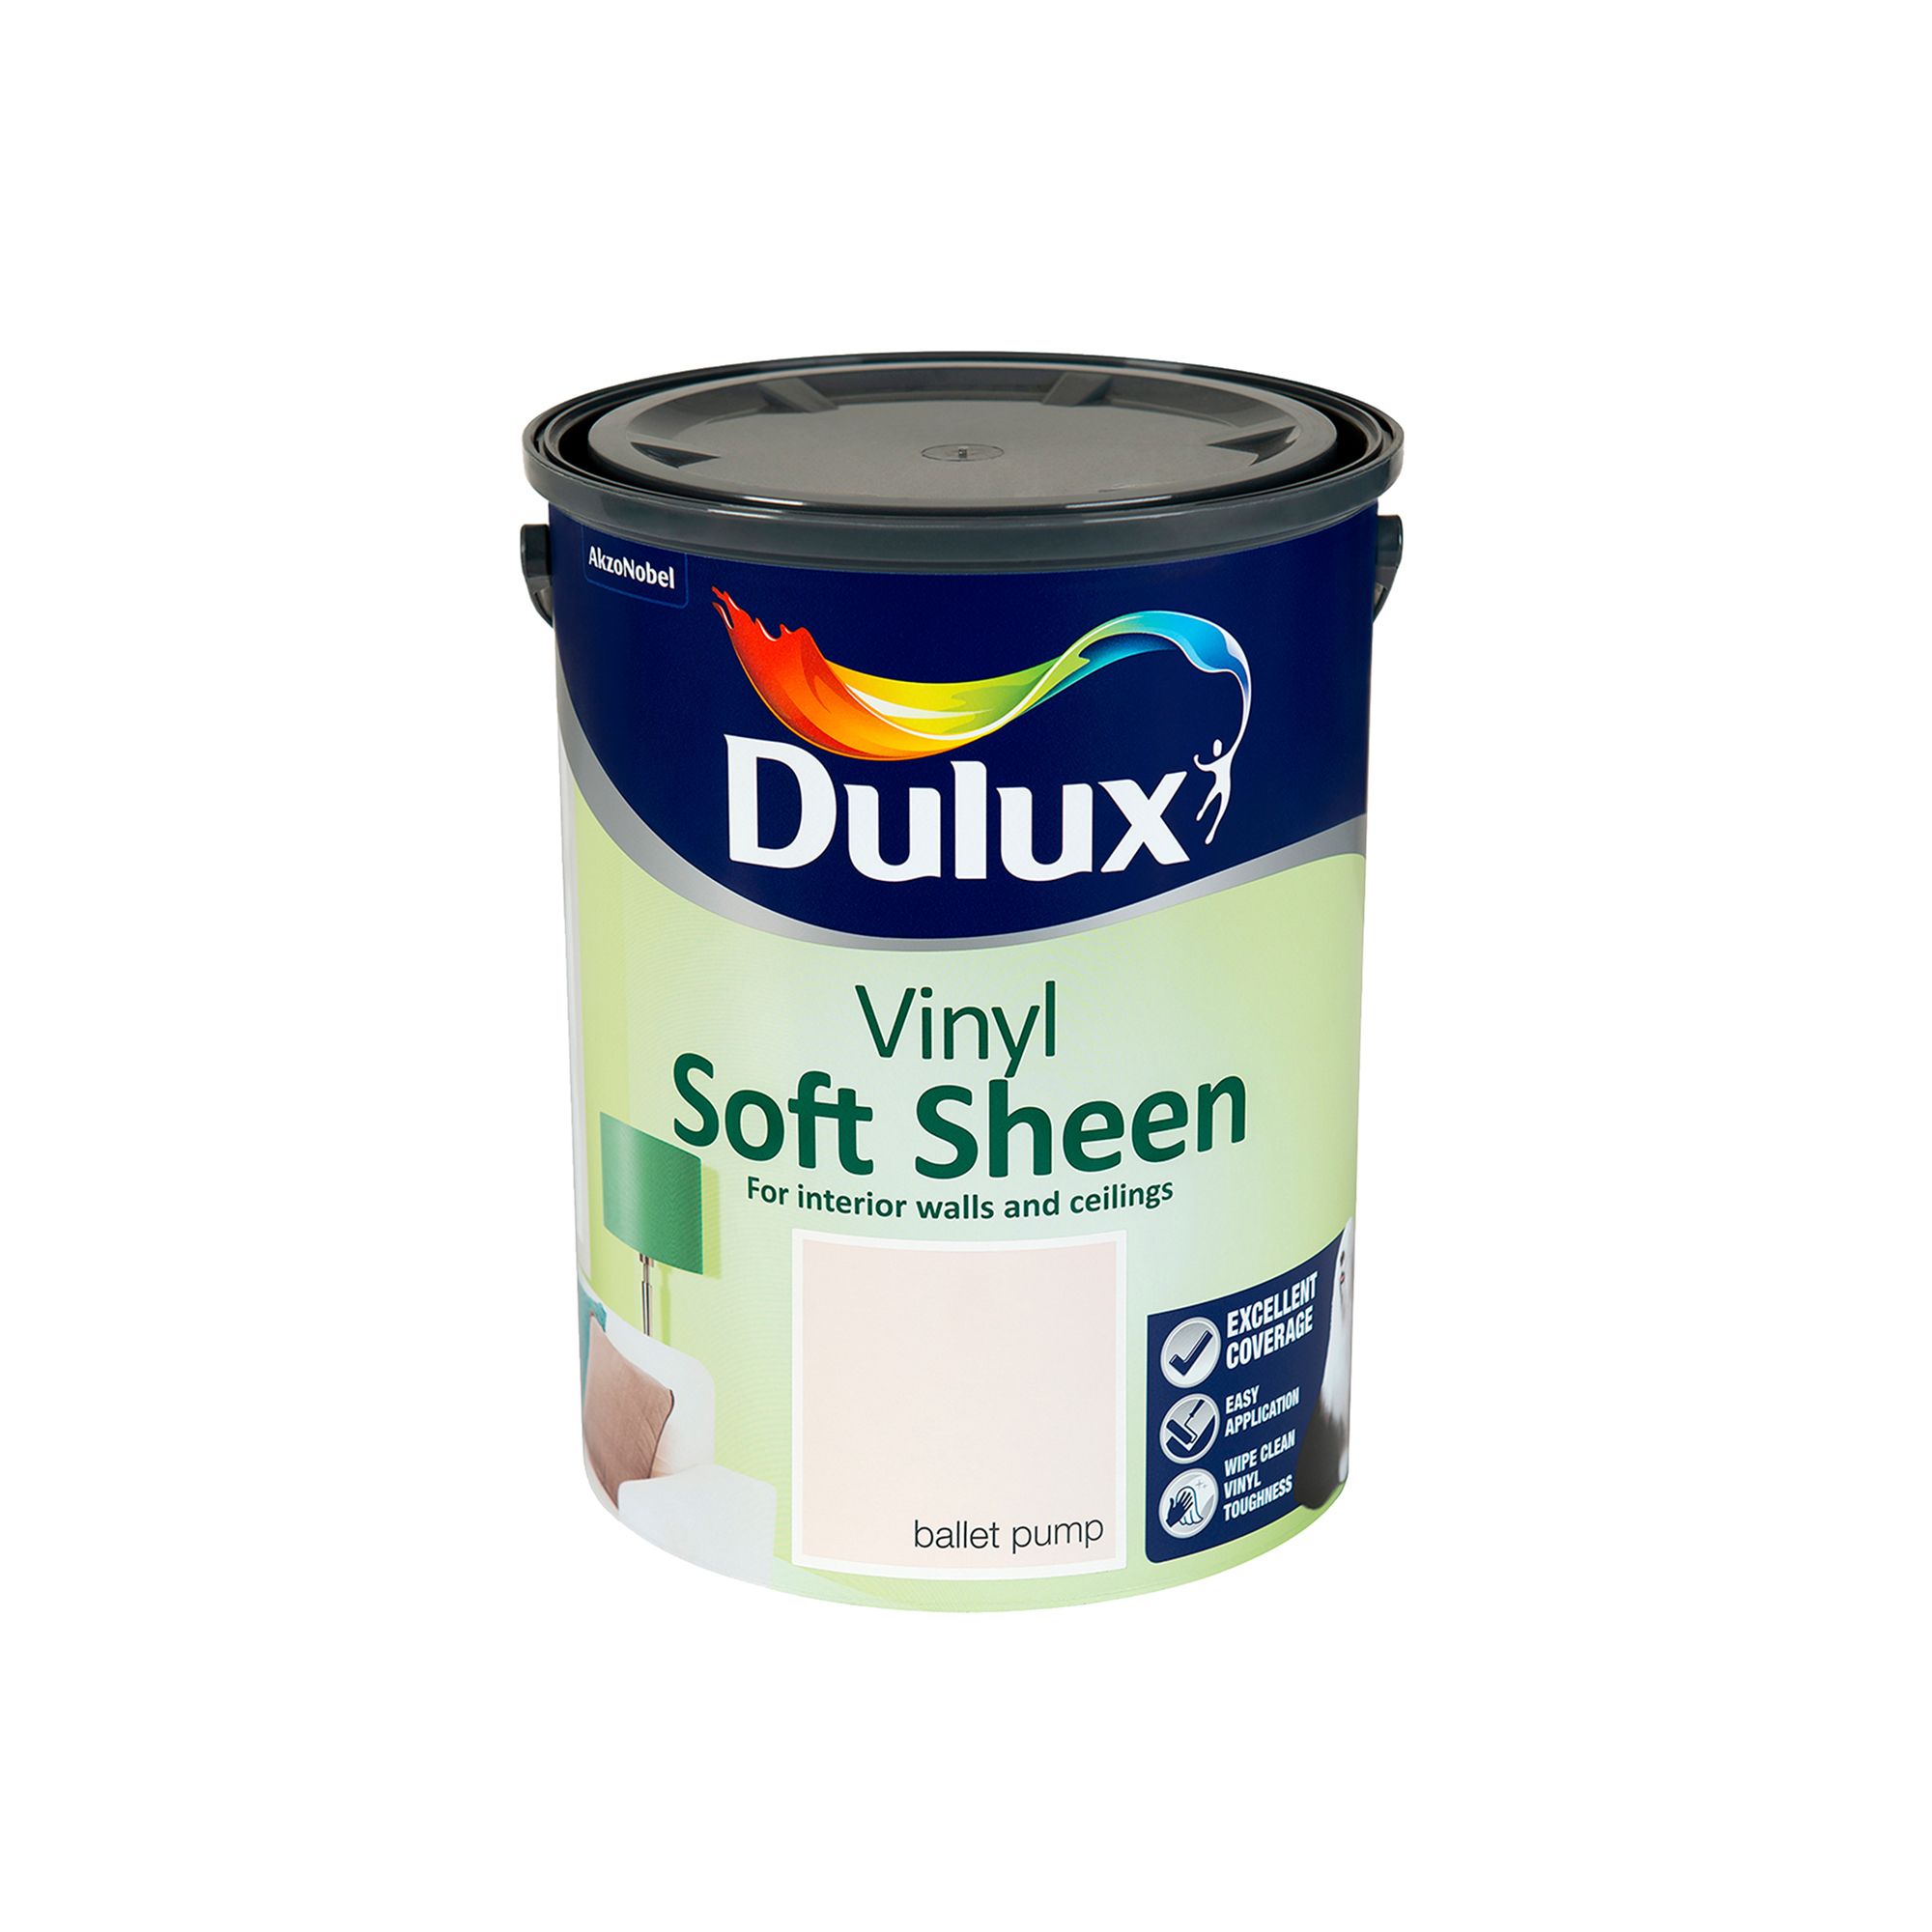 Dulux Ballet pump Soft sheen Emulsion paint, 5L